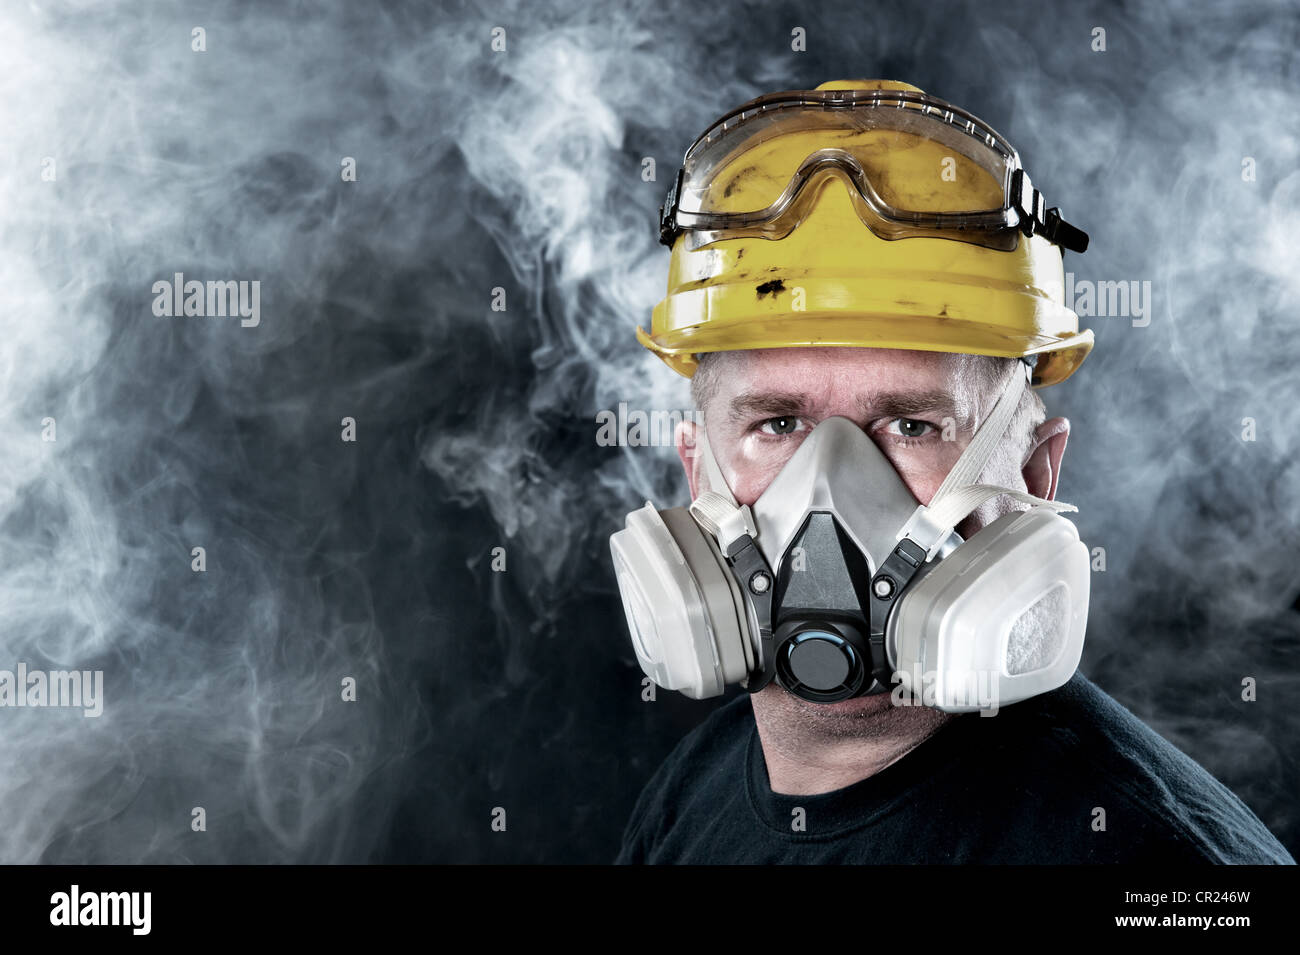 Ein Retter trägt eine Atemschutzmaske in Rauch und giftige Atmosphäre. Bild zeigen die Bedeutung von Sicherheit und Schutz bereit. Stockfoto